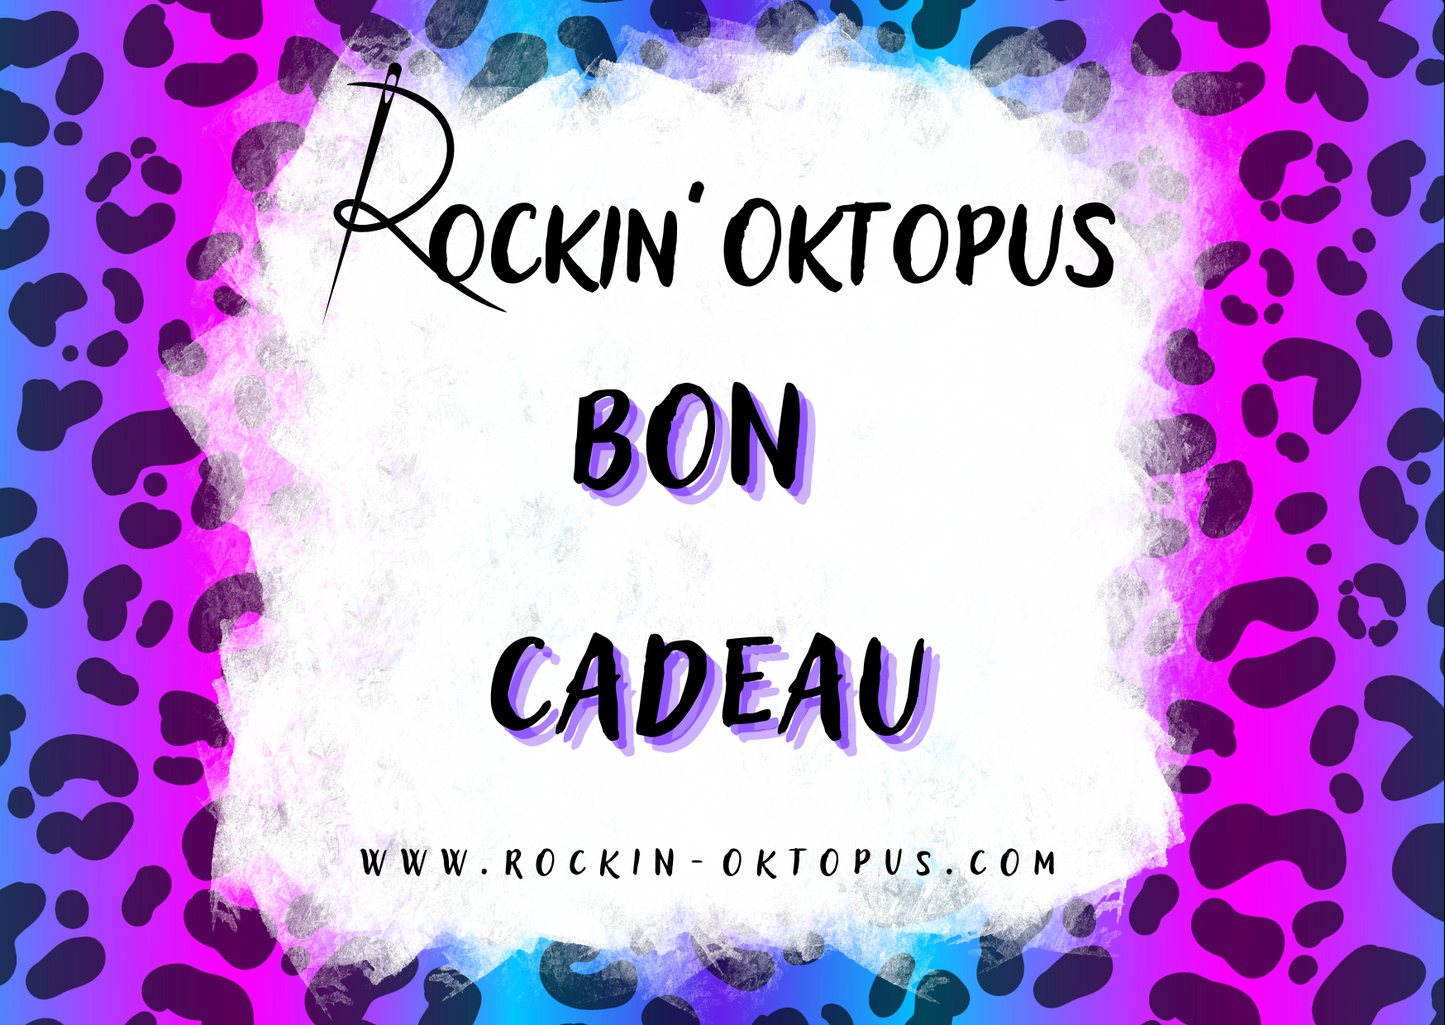 Carte cadeau Rockin' Oktopus 20€